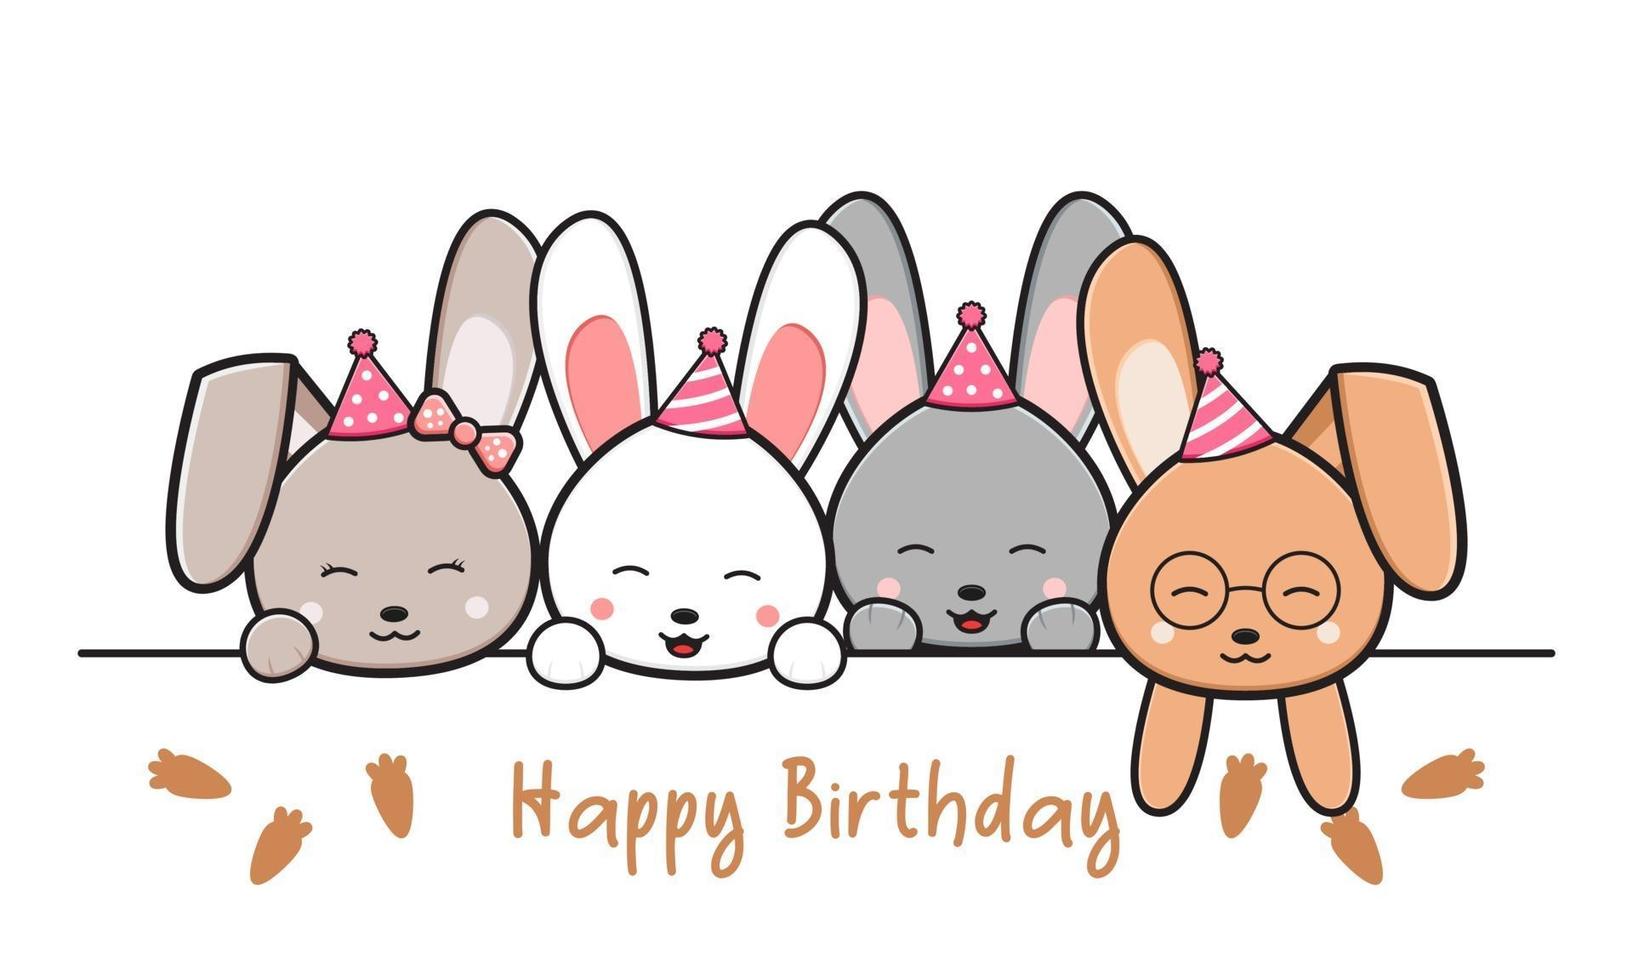 carte de voeux joyeux anniversaire avec illustration de doodle de lapins mignons vecteur